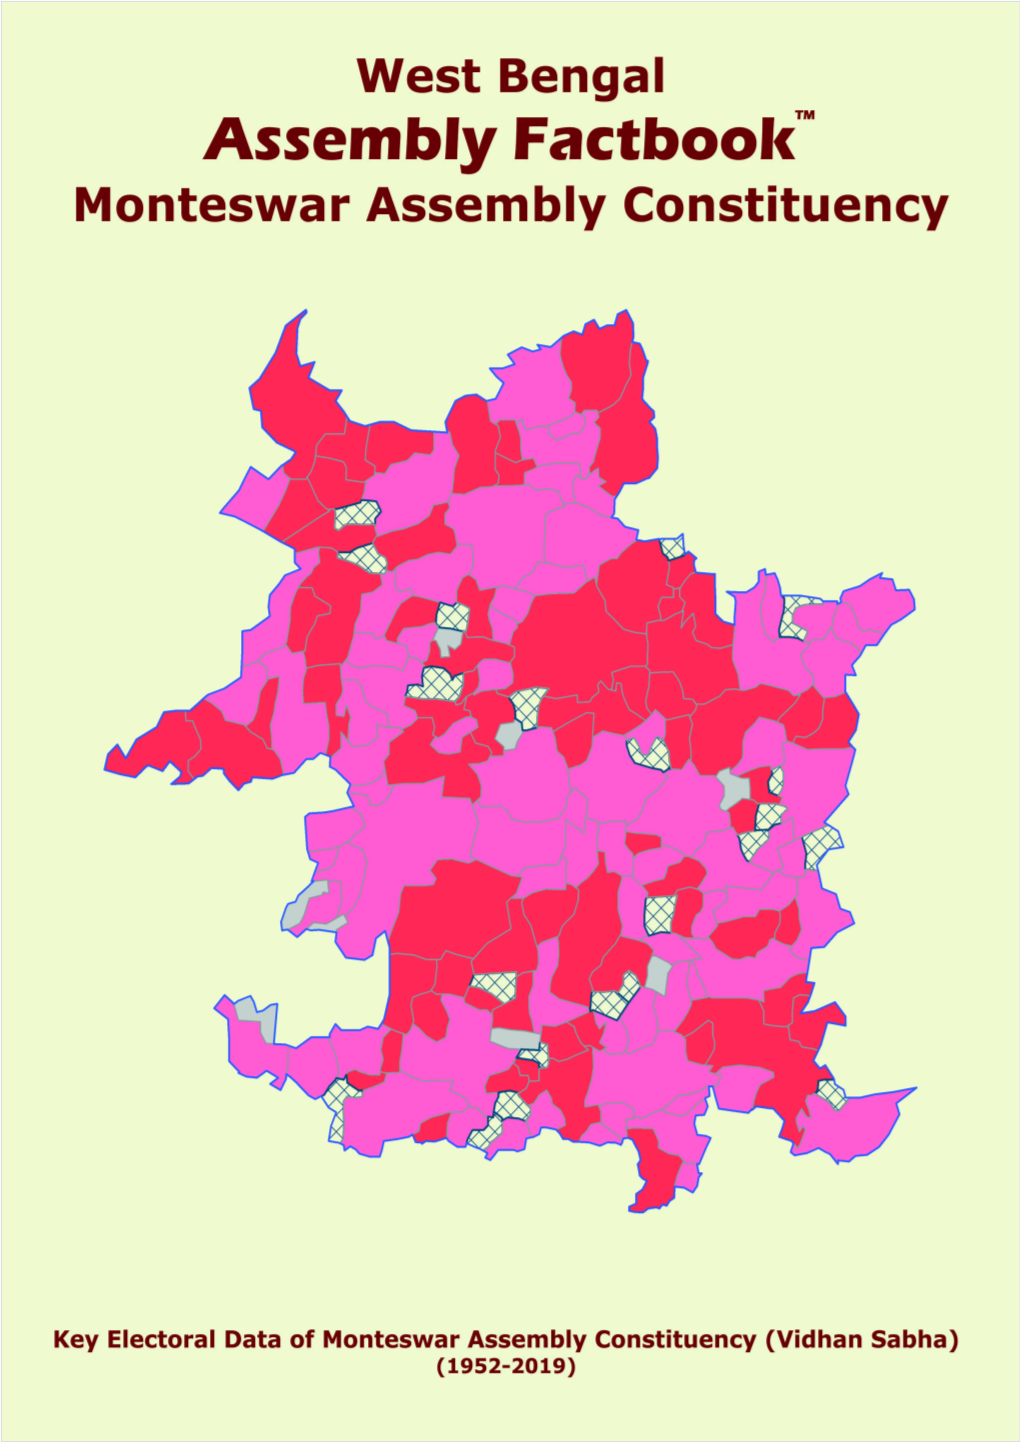 Monteswar Assembly West Bengal Factbook